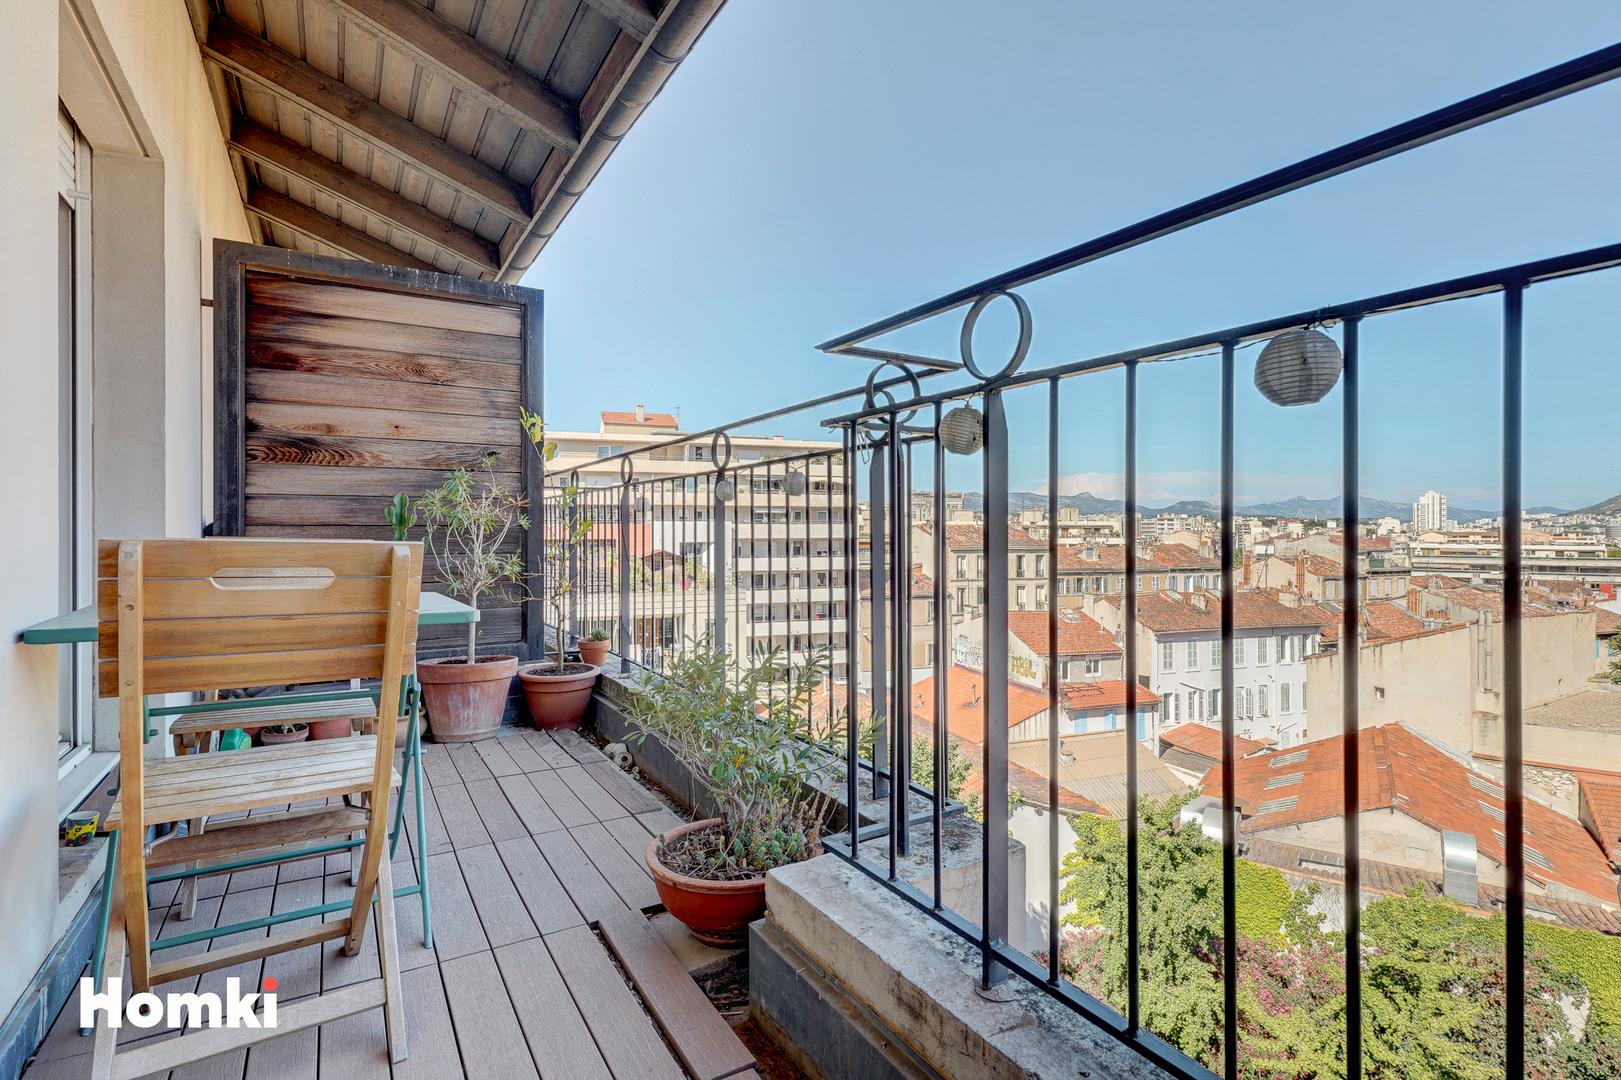 Homki - Vente Appartement  de 63.0 m² à Marseille 13005